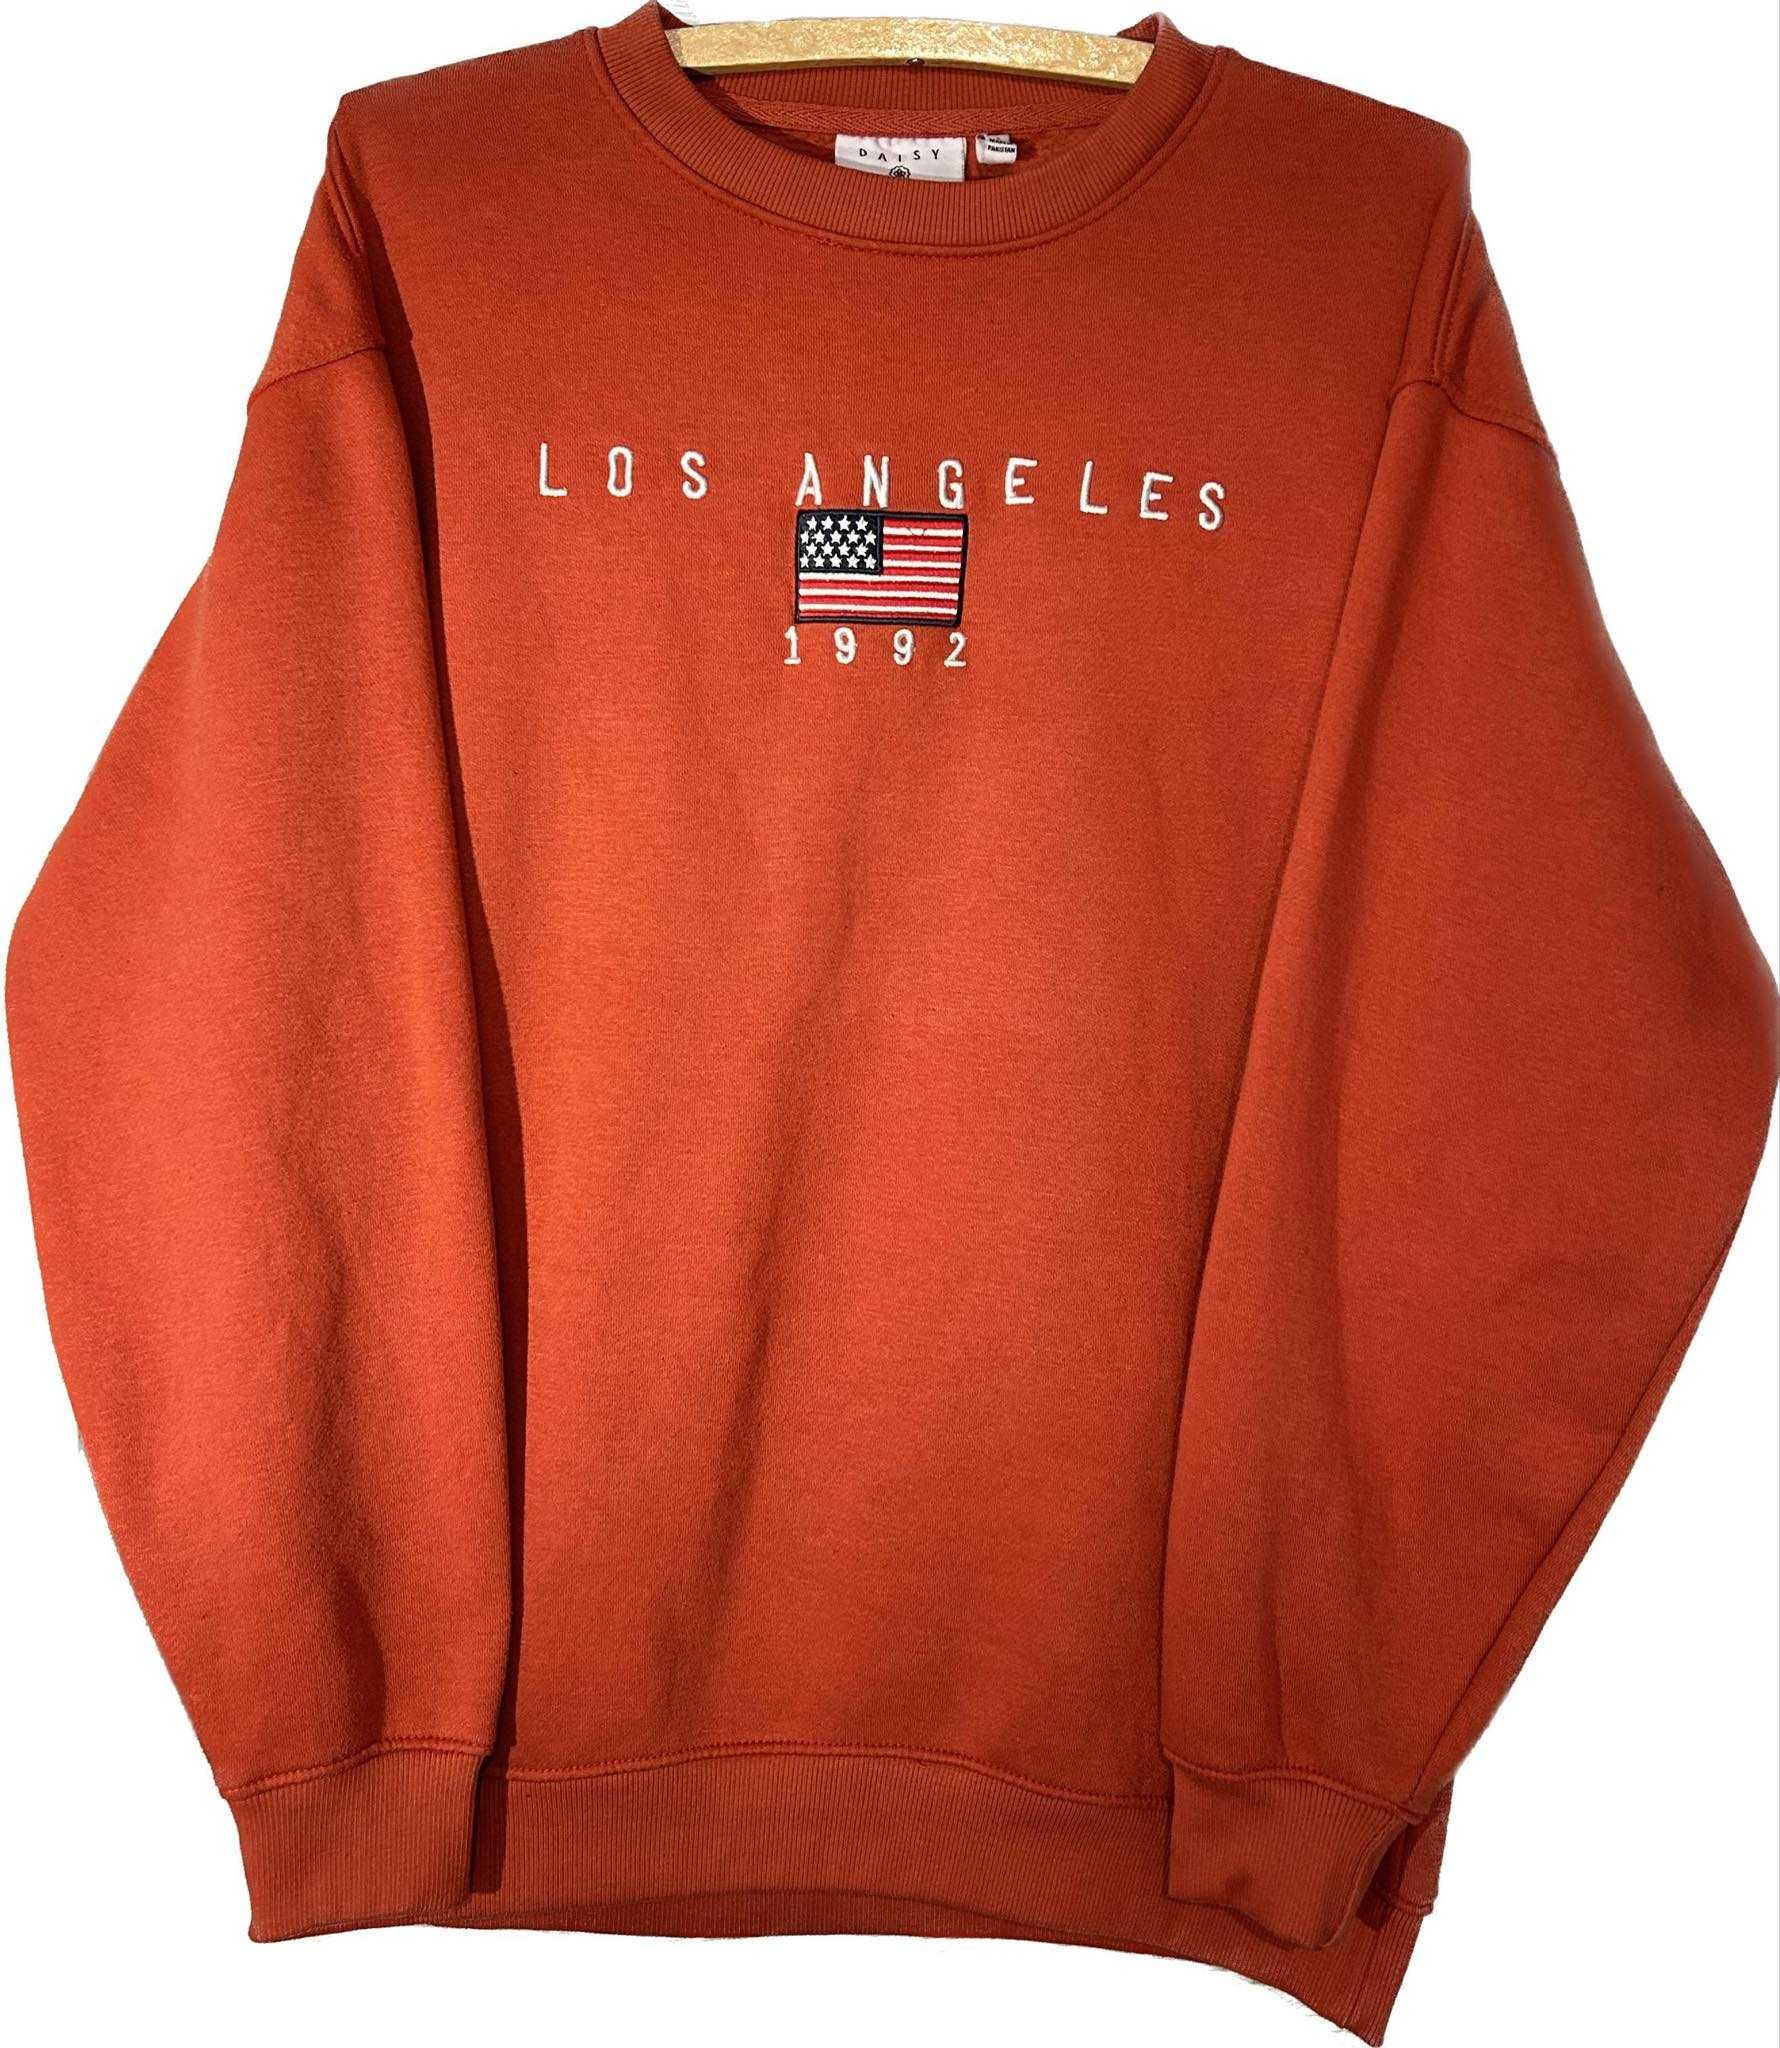 Bluza pomarańczowo, czerwona Daisy Street, Los Angeles, rozmiar S